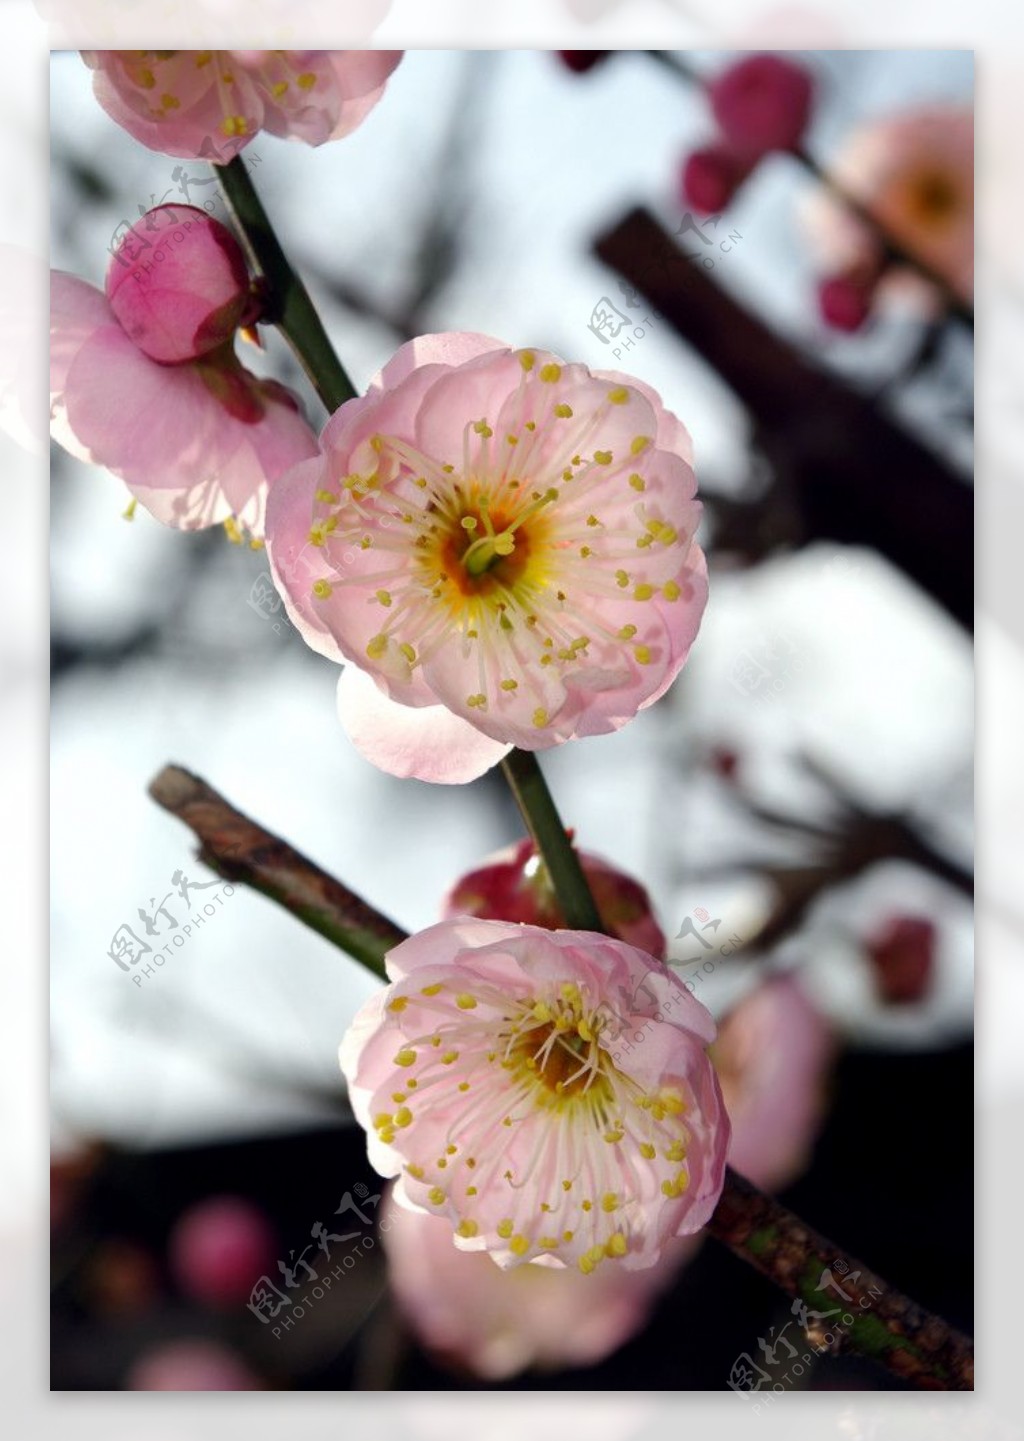 冬季里盛开的梅花图片